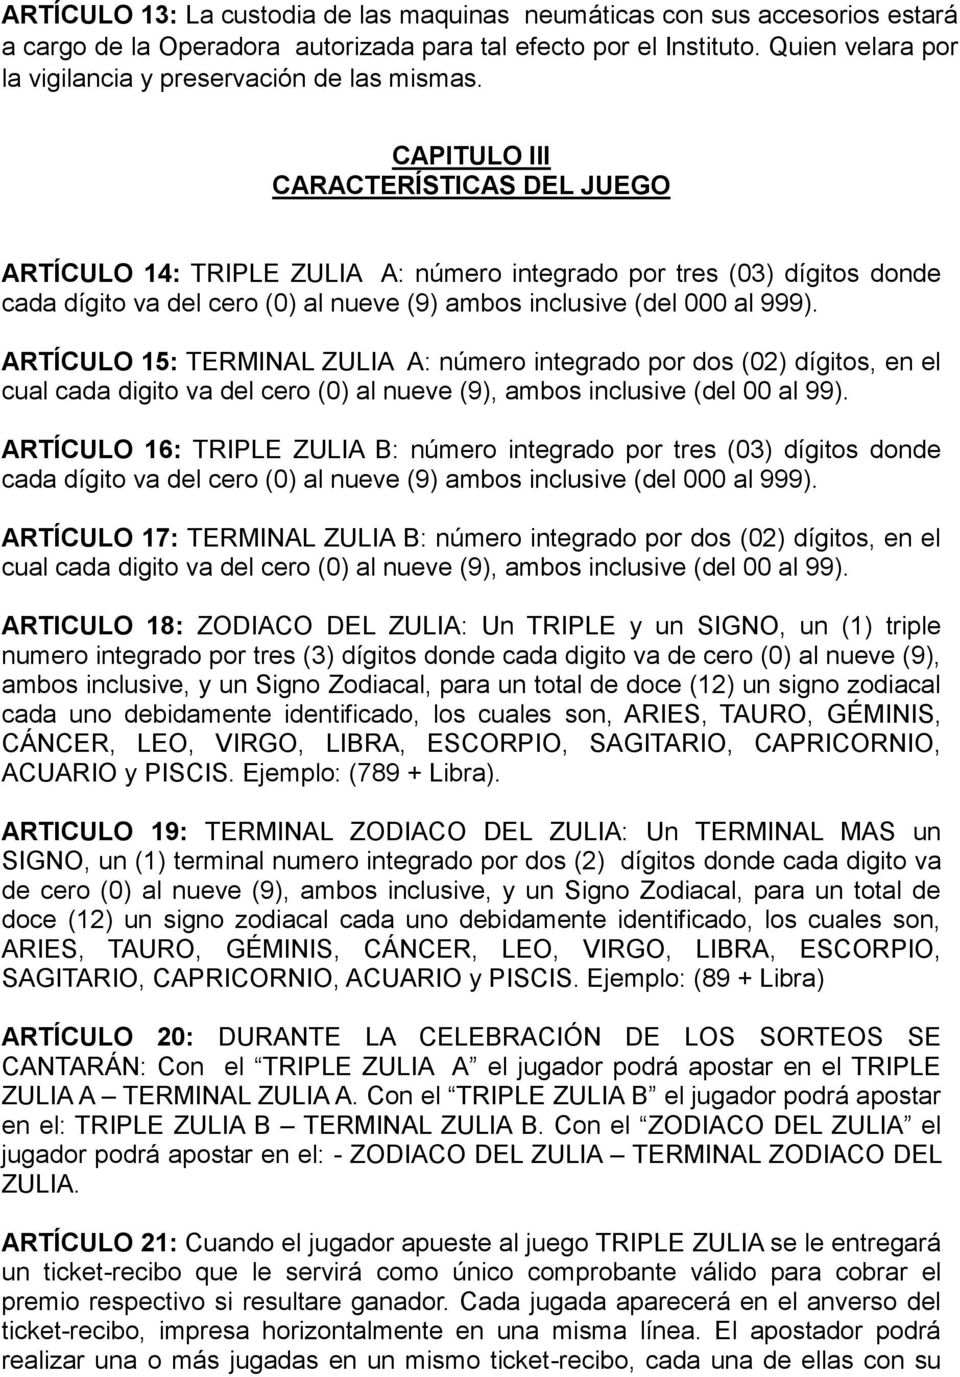 CAPITULO III CARACTERÍSTICAS DEL JUEGO ARTÍCULO 14: TRIPLE ZULIA A: número integrado por tres (03) dígitos donde cada dígito va del cero (0) al nueve (9) ambos inclusive (del 000 al 999).